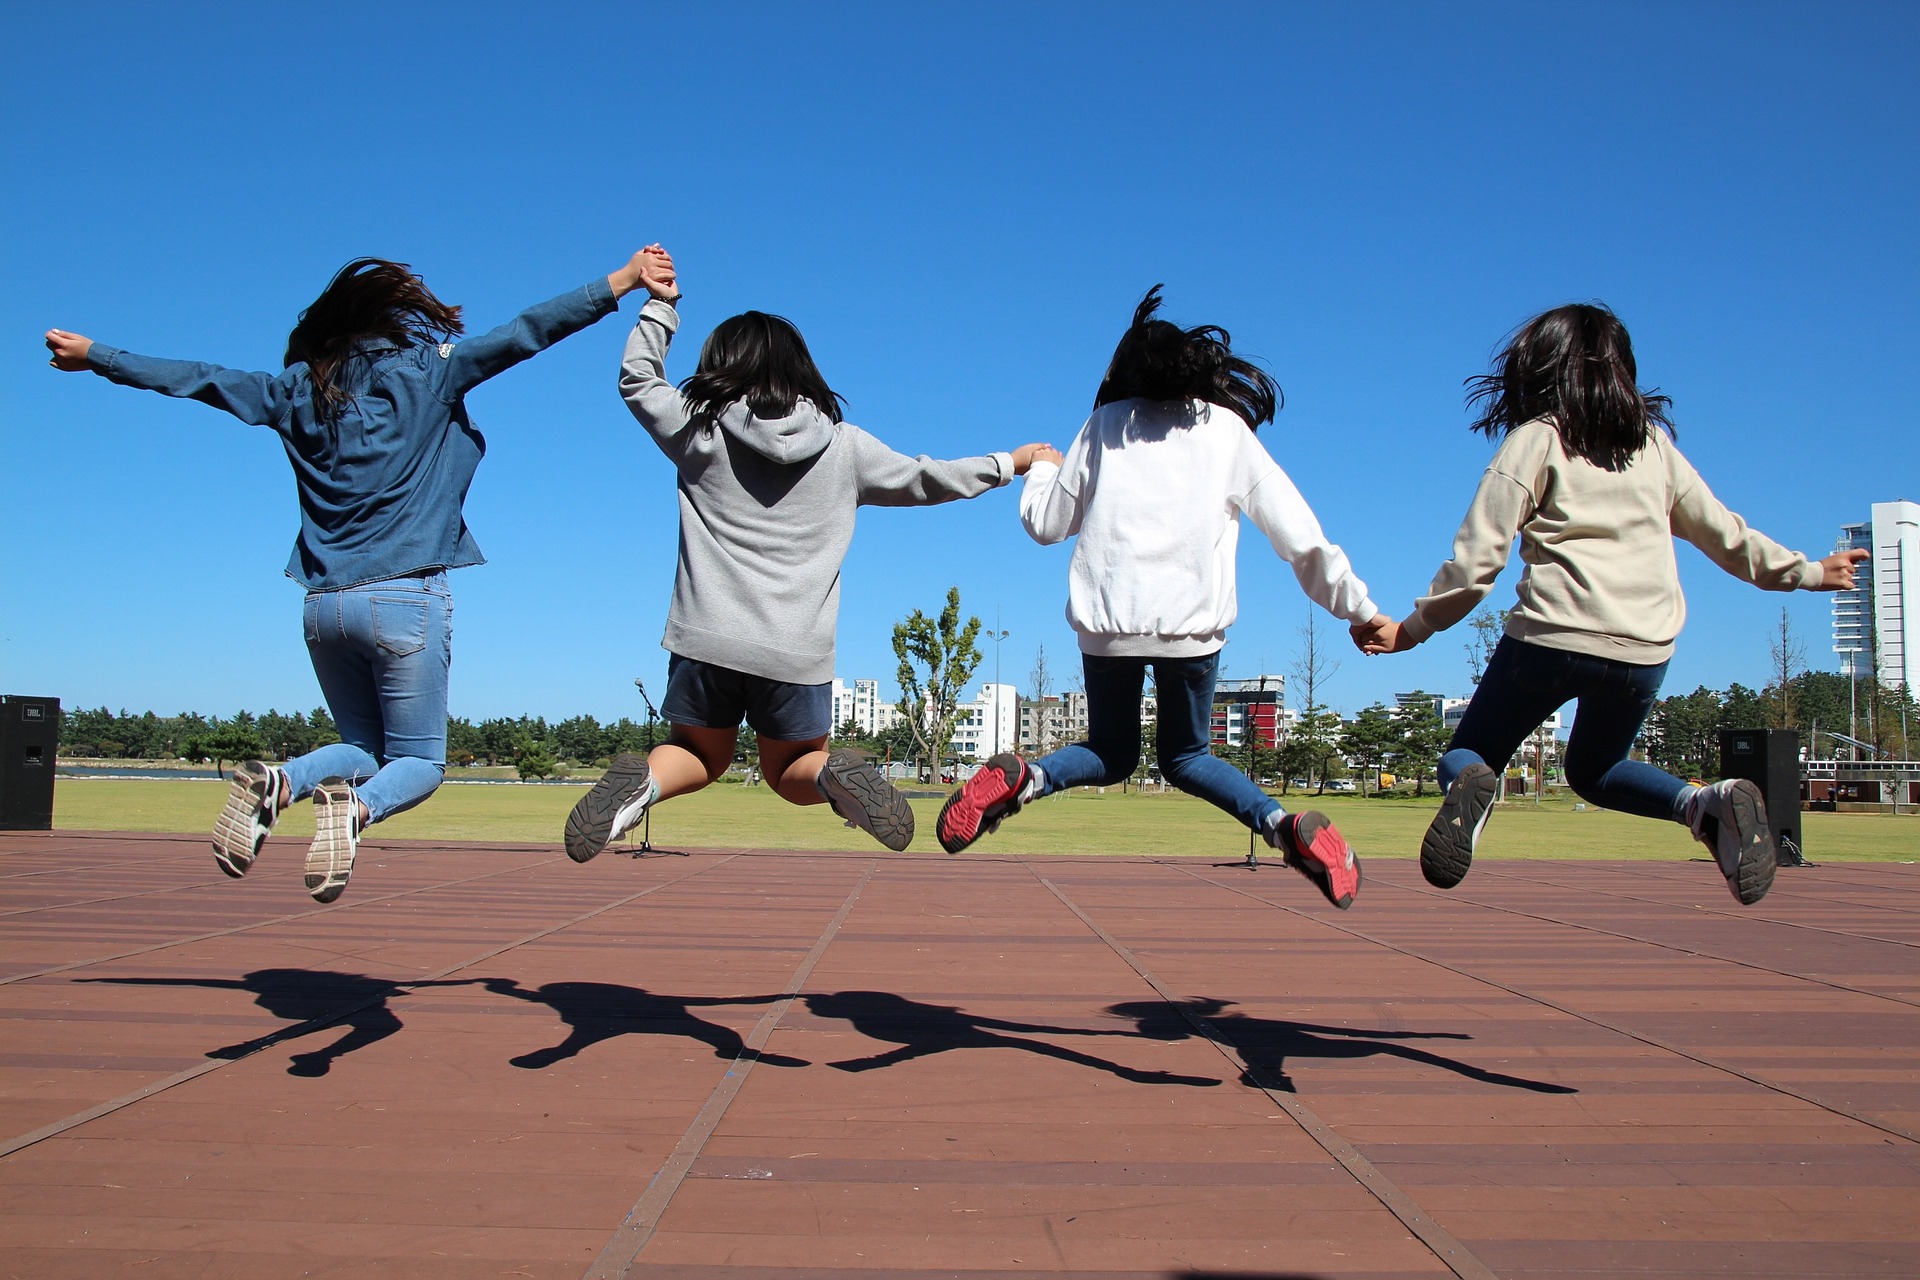 Nuoret hyppäävät yhdessä ilmaan käsistä pitäen